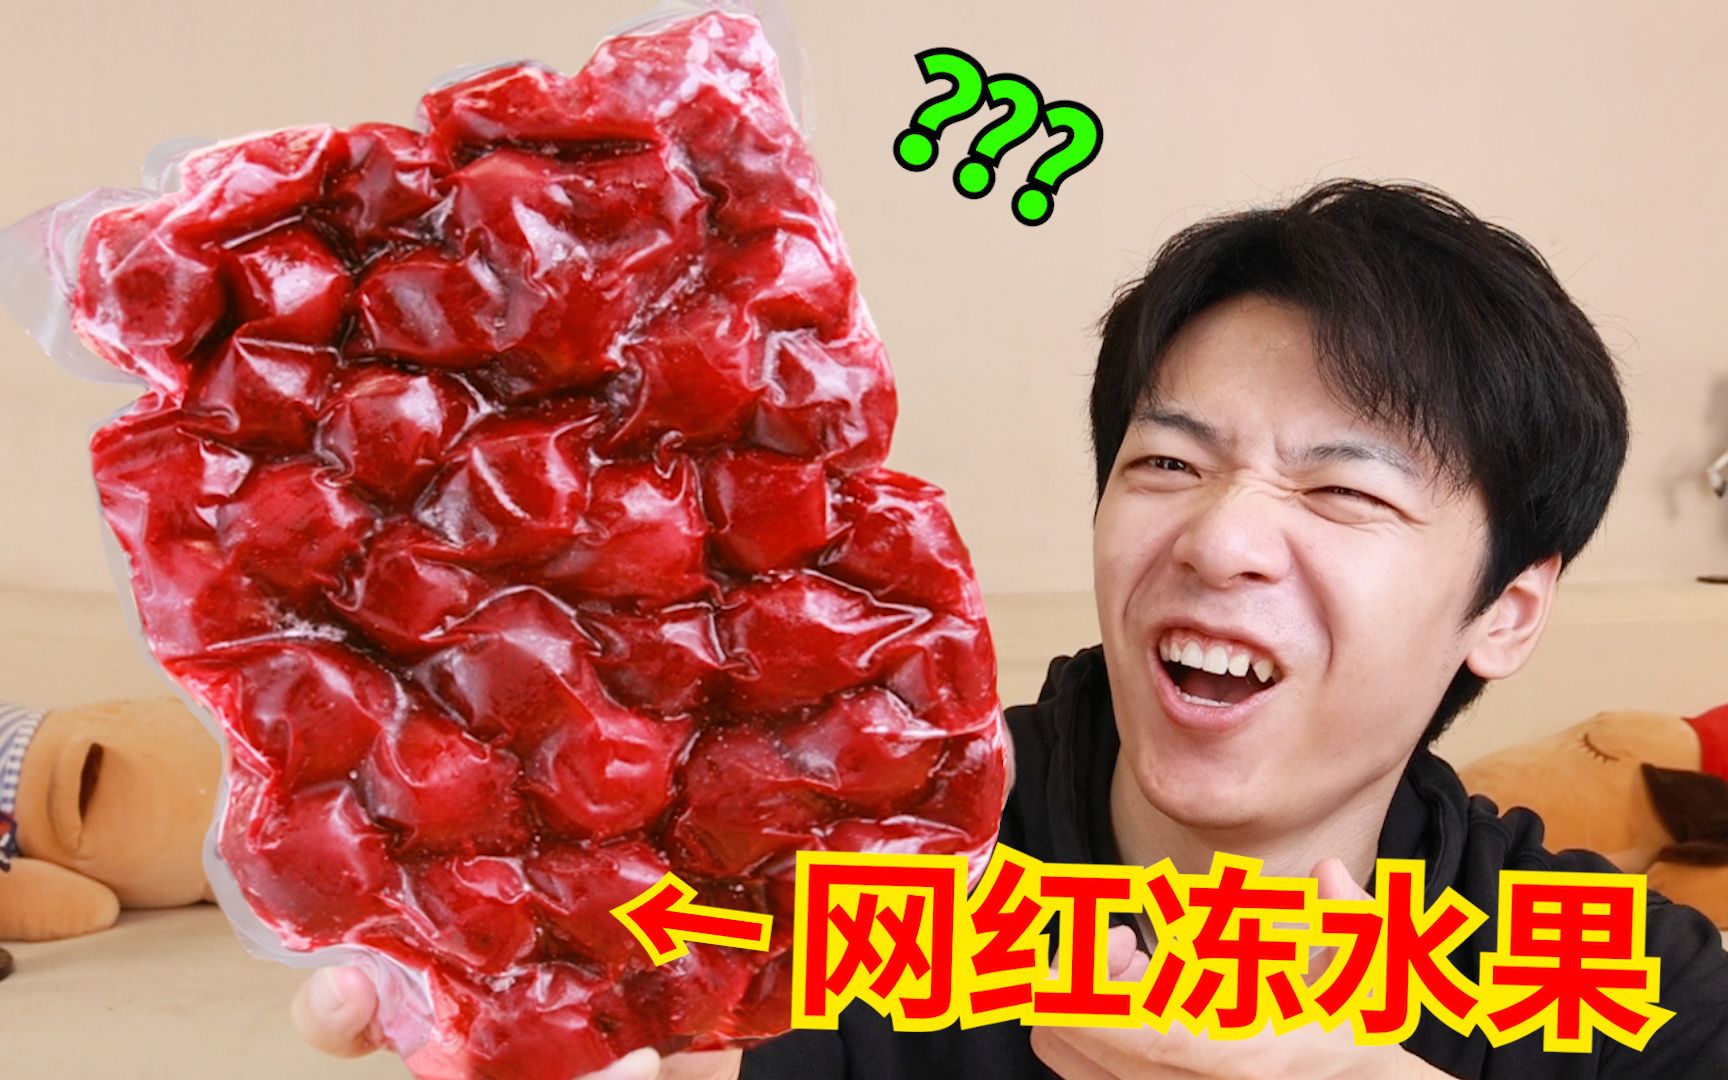 拼夕夕上面的“网红冻水果”，真的能吃吗？？？